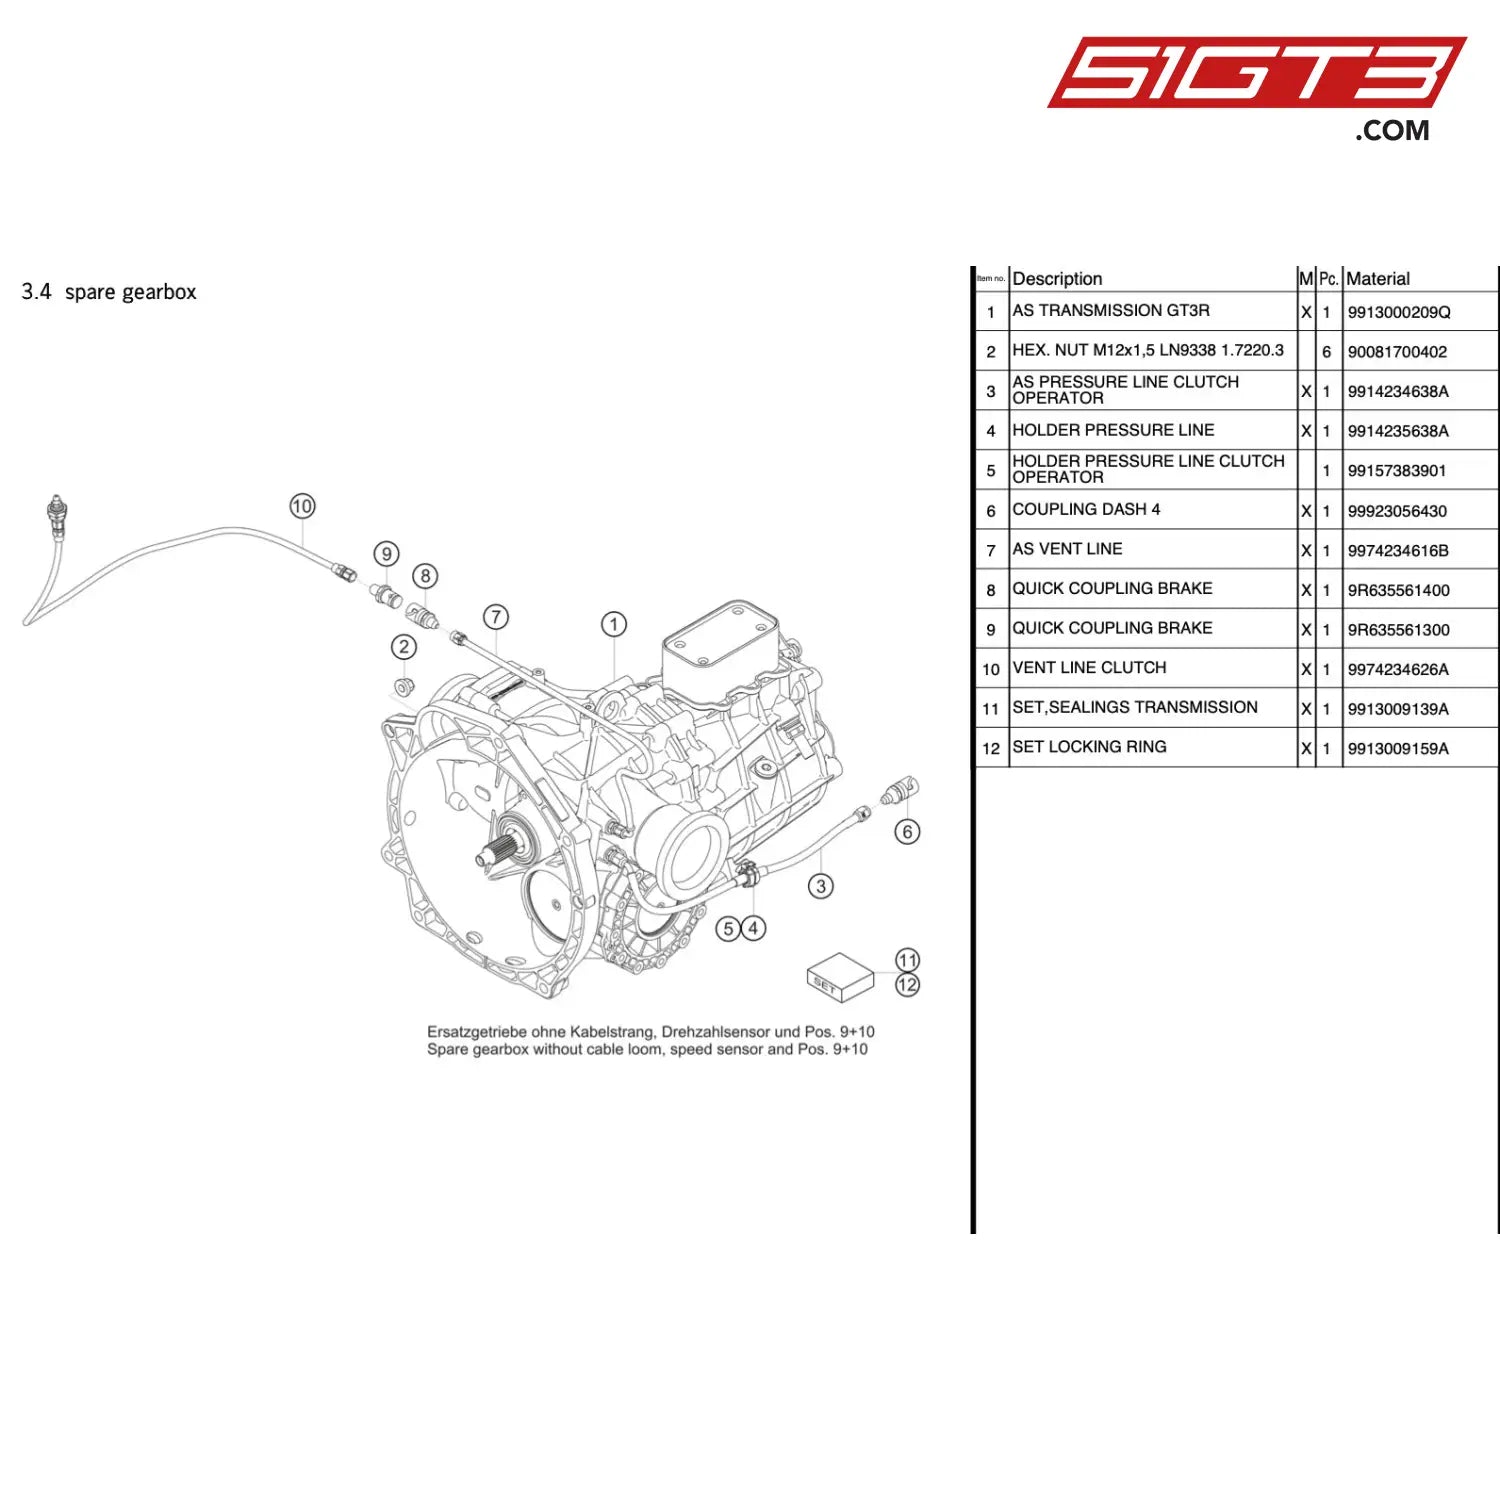 As Vent Line - 9974234616B [Porsche 911 Gt3 R Type 991 (Gen 1)] Spare Gearbox